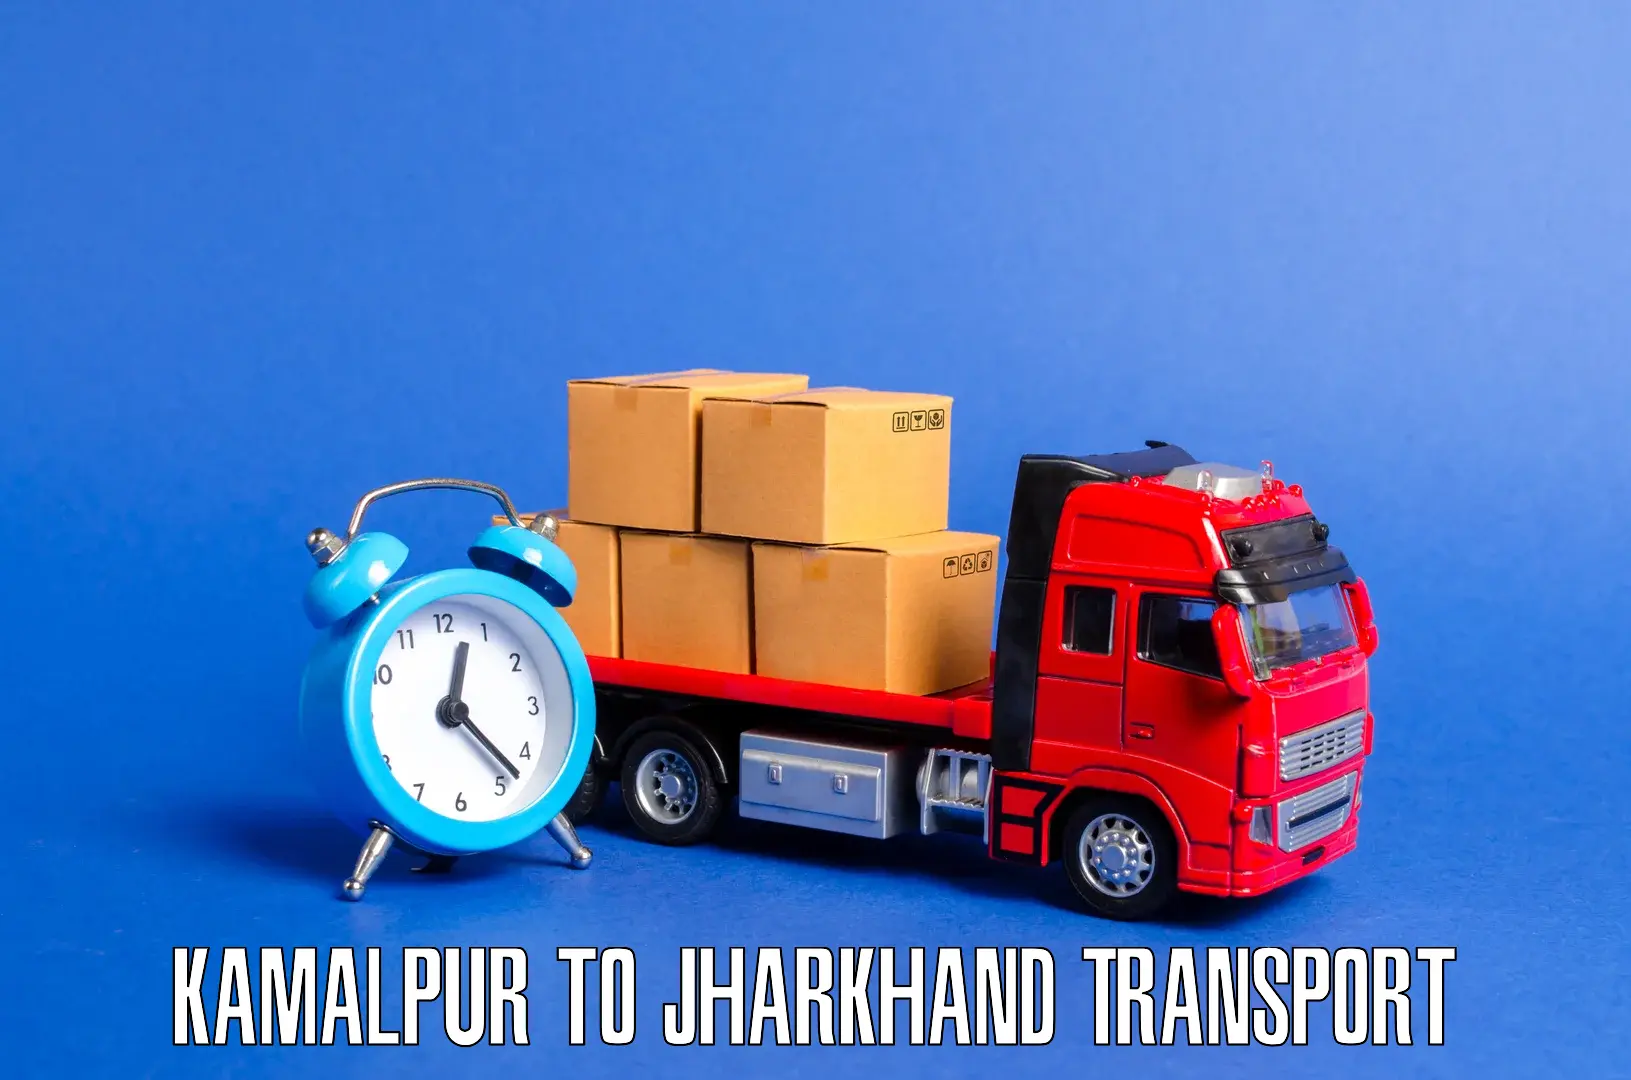 Lorry transport service Kamalpur to Chandwa